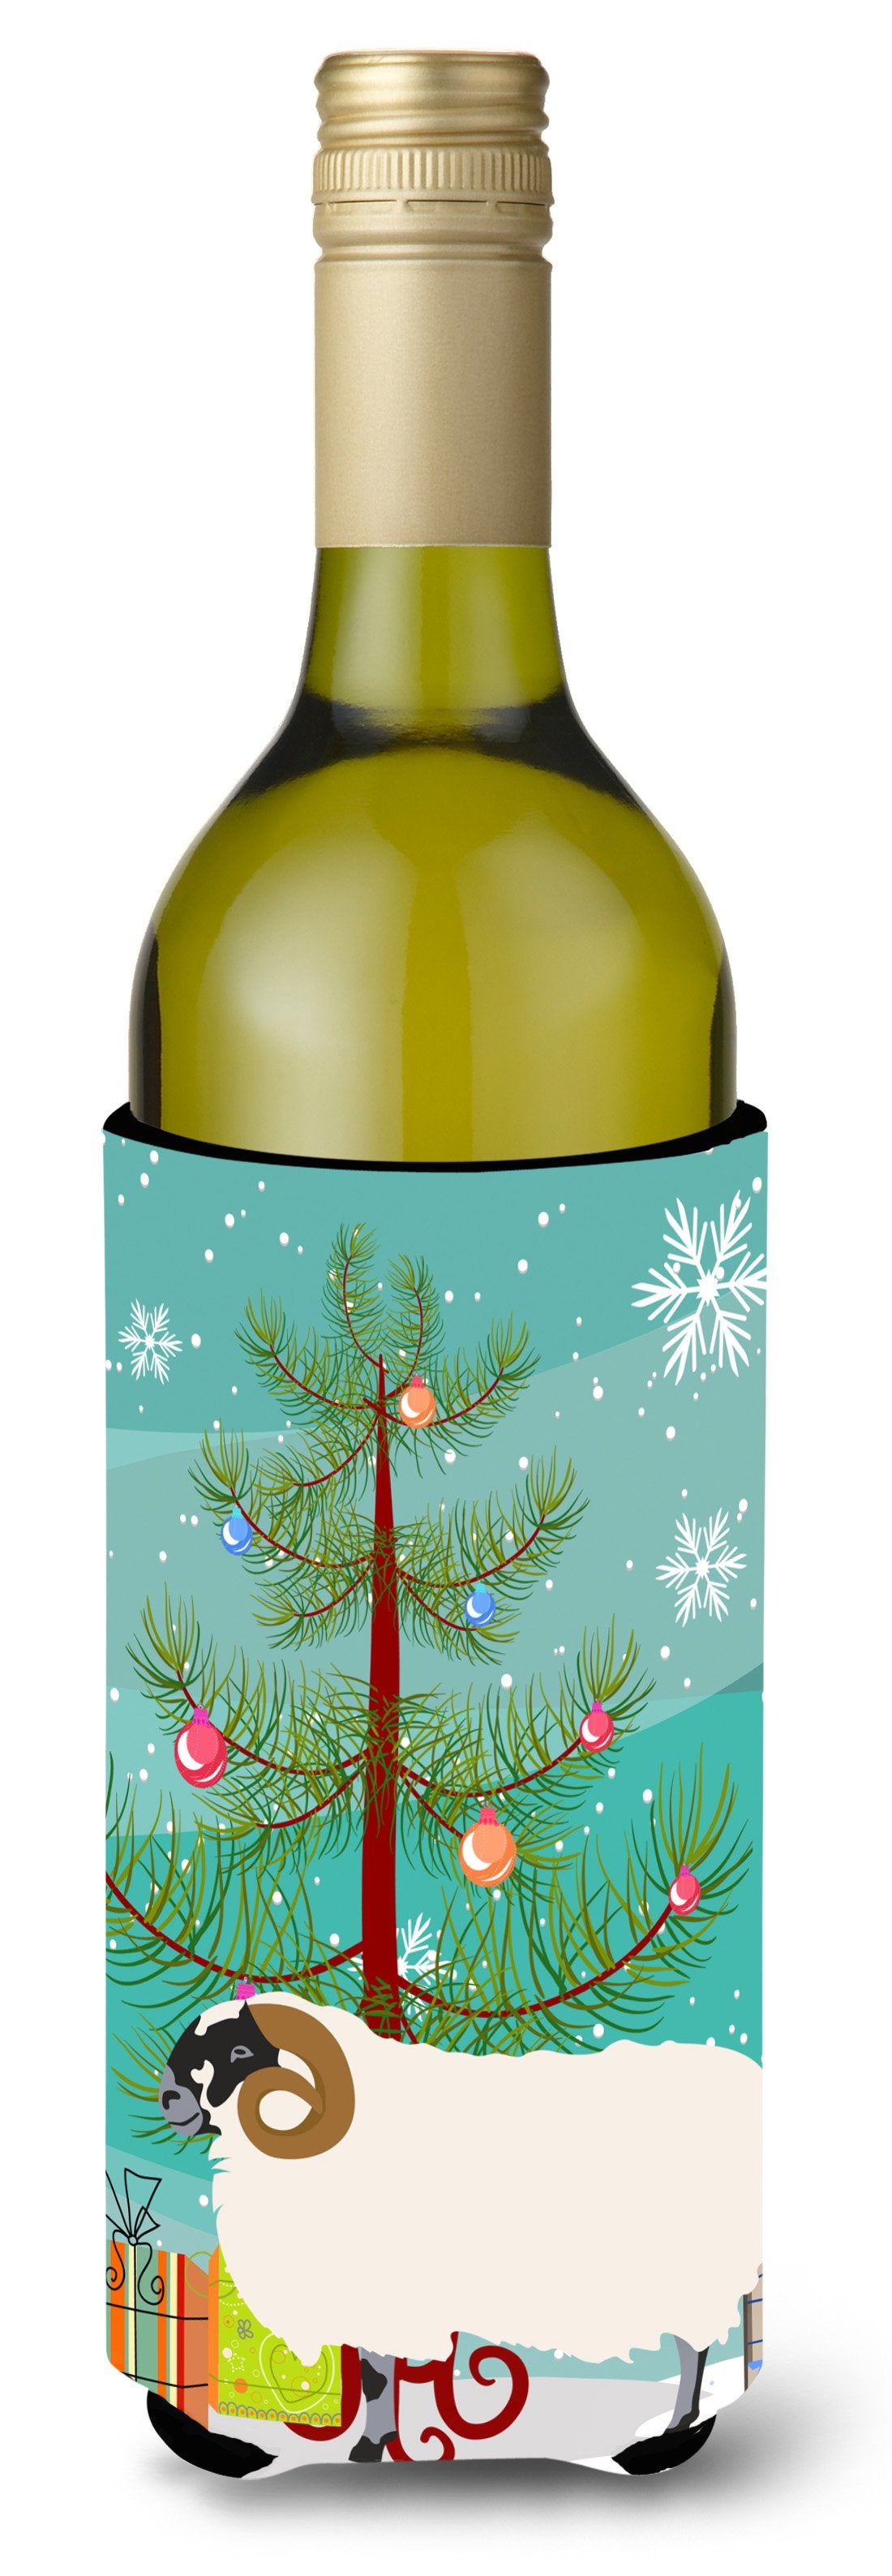 Scottish Blackface Sheep Christmas Wine Bottle Beverge Insulator Hugger BB9340LITERK by Caroline's Treasures